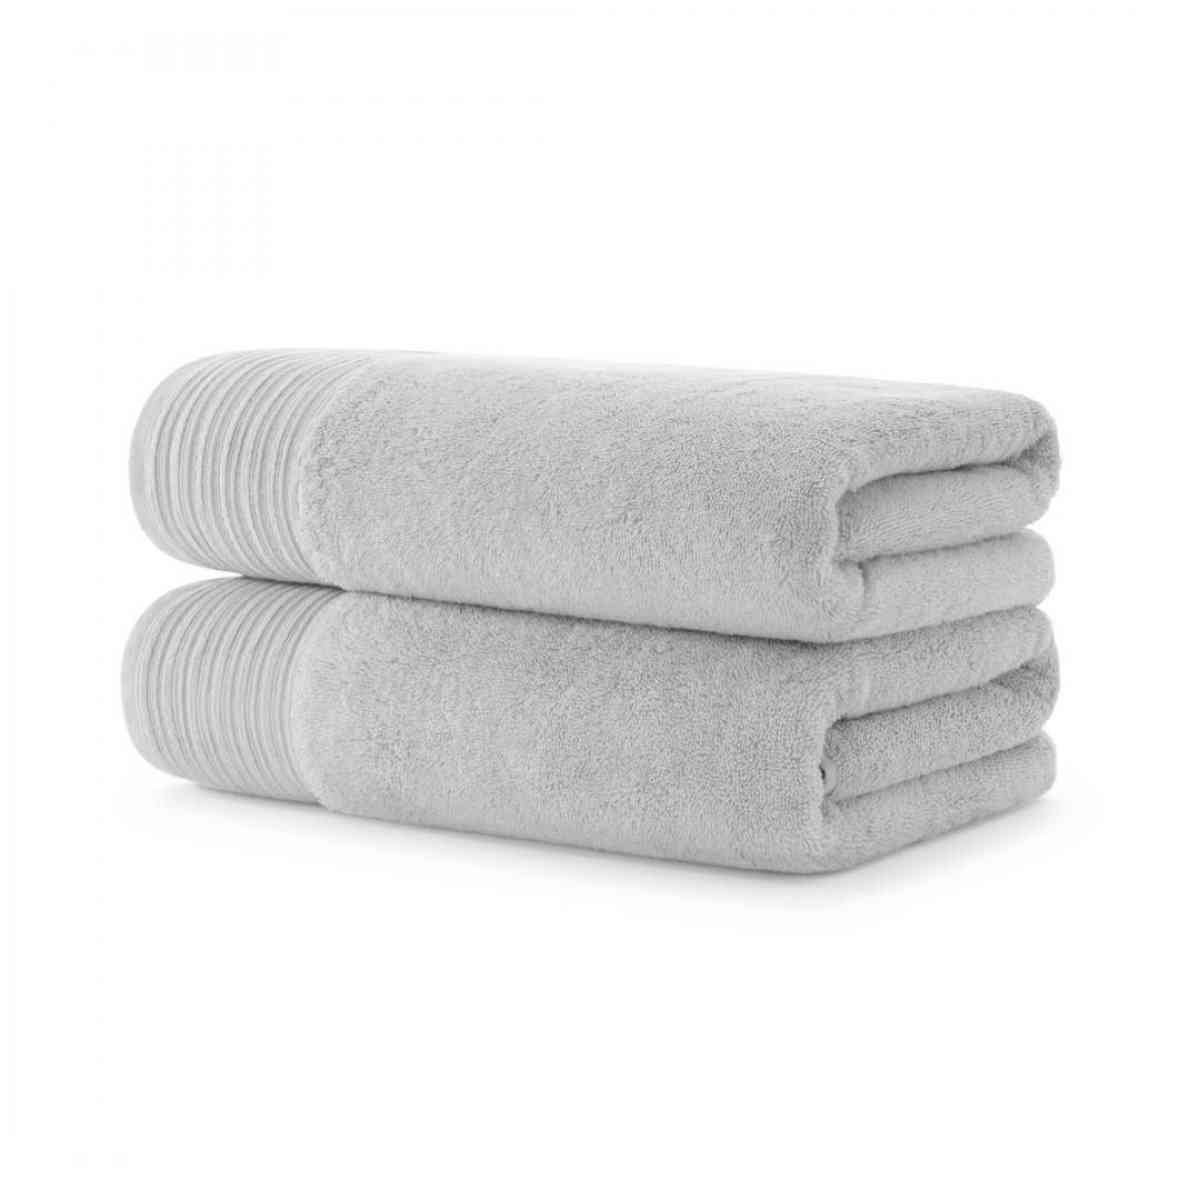 Luxury Bath towels 2 pack